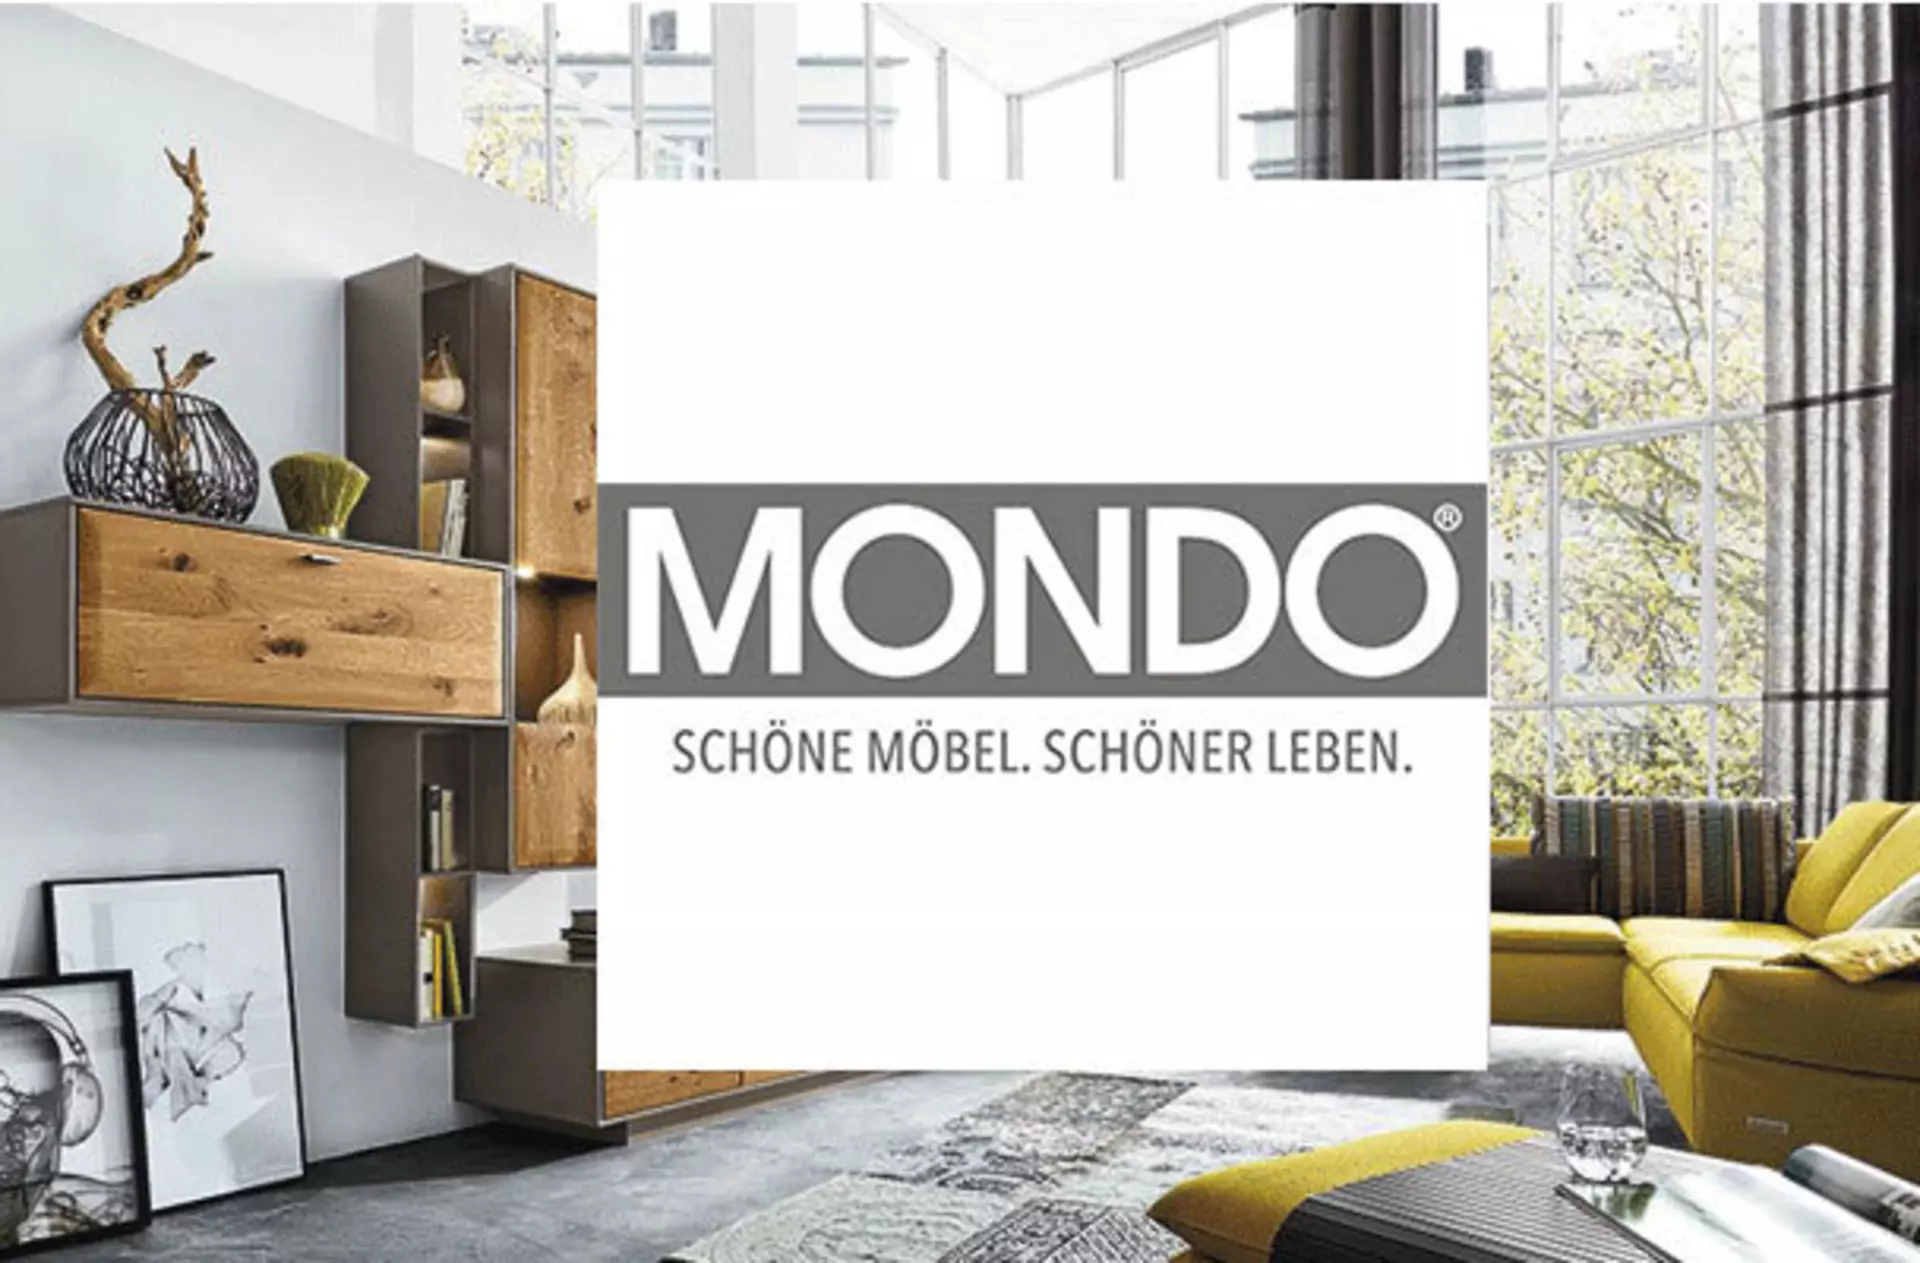 im Vordergrund steht das Logo von Mondo und im Hintergrund sieht man leicht ein Wohnzimmer